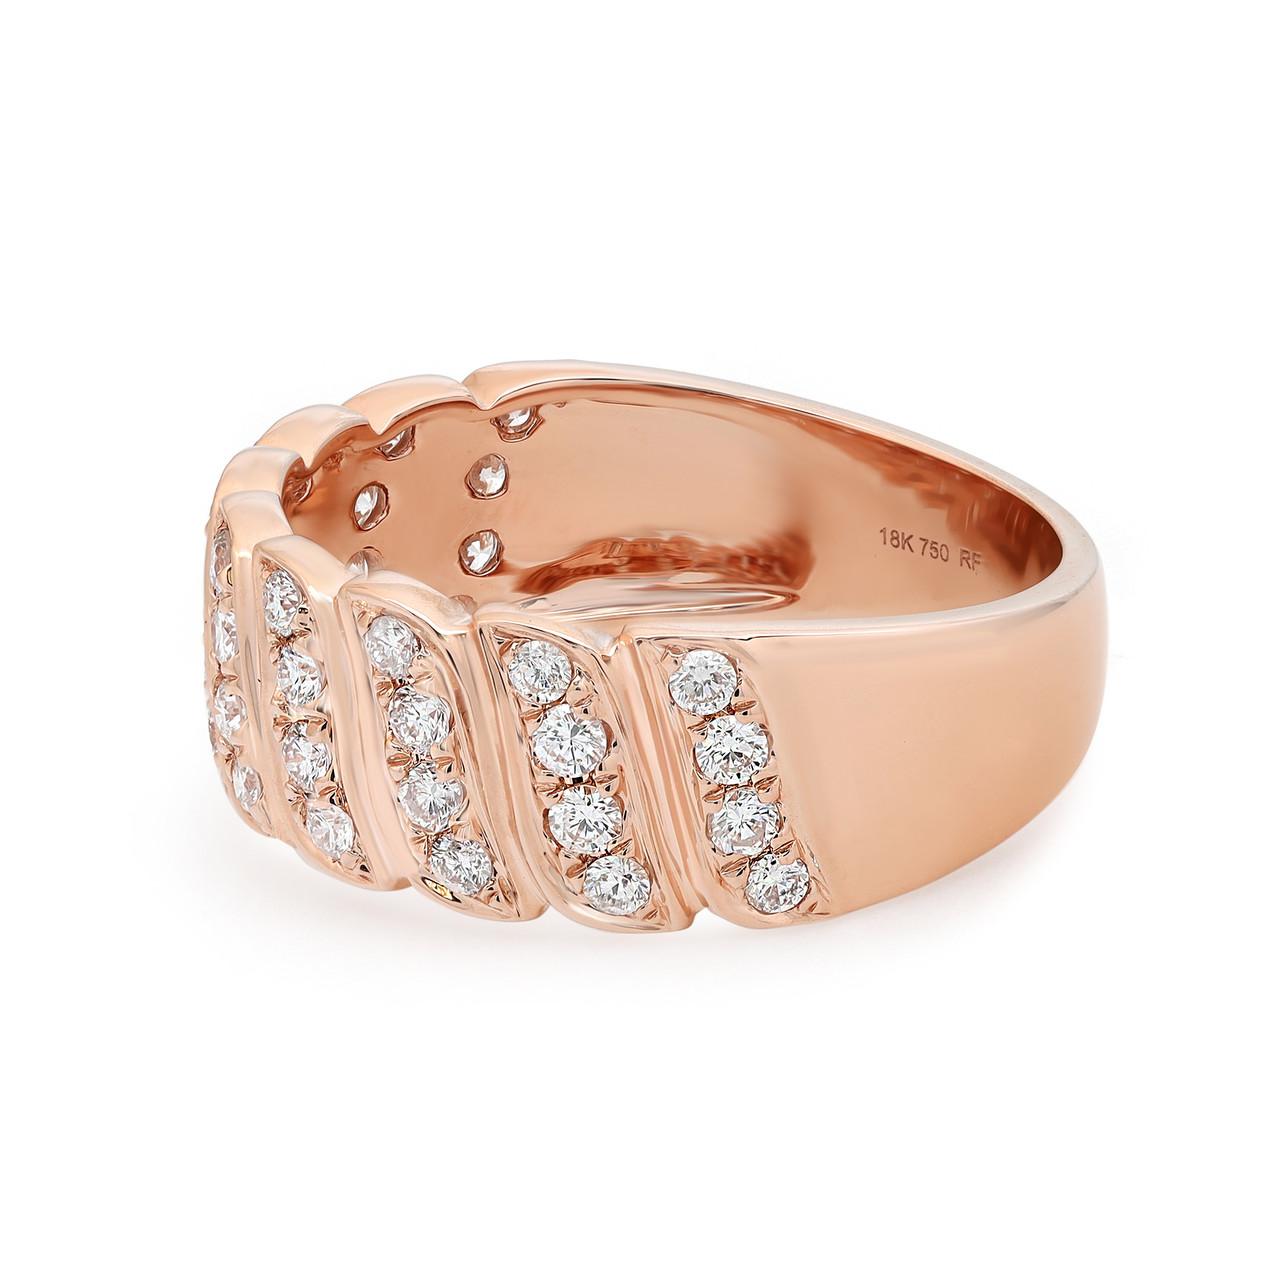 Wir stellen Ihnen unseren exquisiten 0,52 Karat Rundschliff-Diamantring in 18 Karat Roségold vor. Dieses atemberaubende Schmuckstück zieht mit seinen schillernden Diamanten garantiert alle Blicke auf sich. Das zeitlose und modische Design dieses